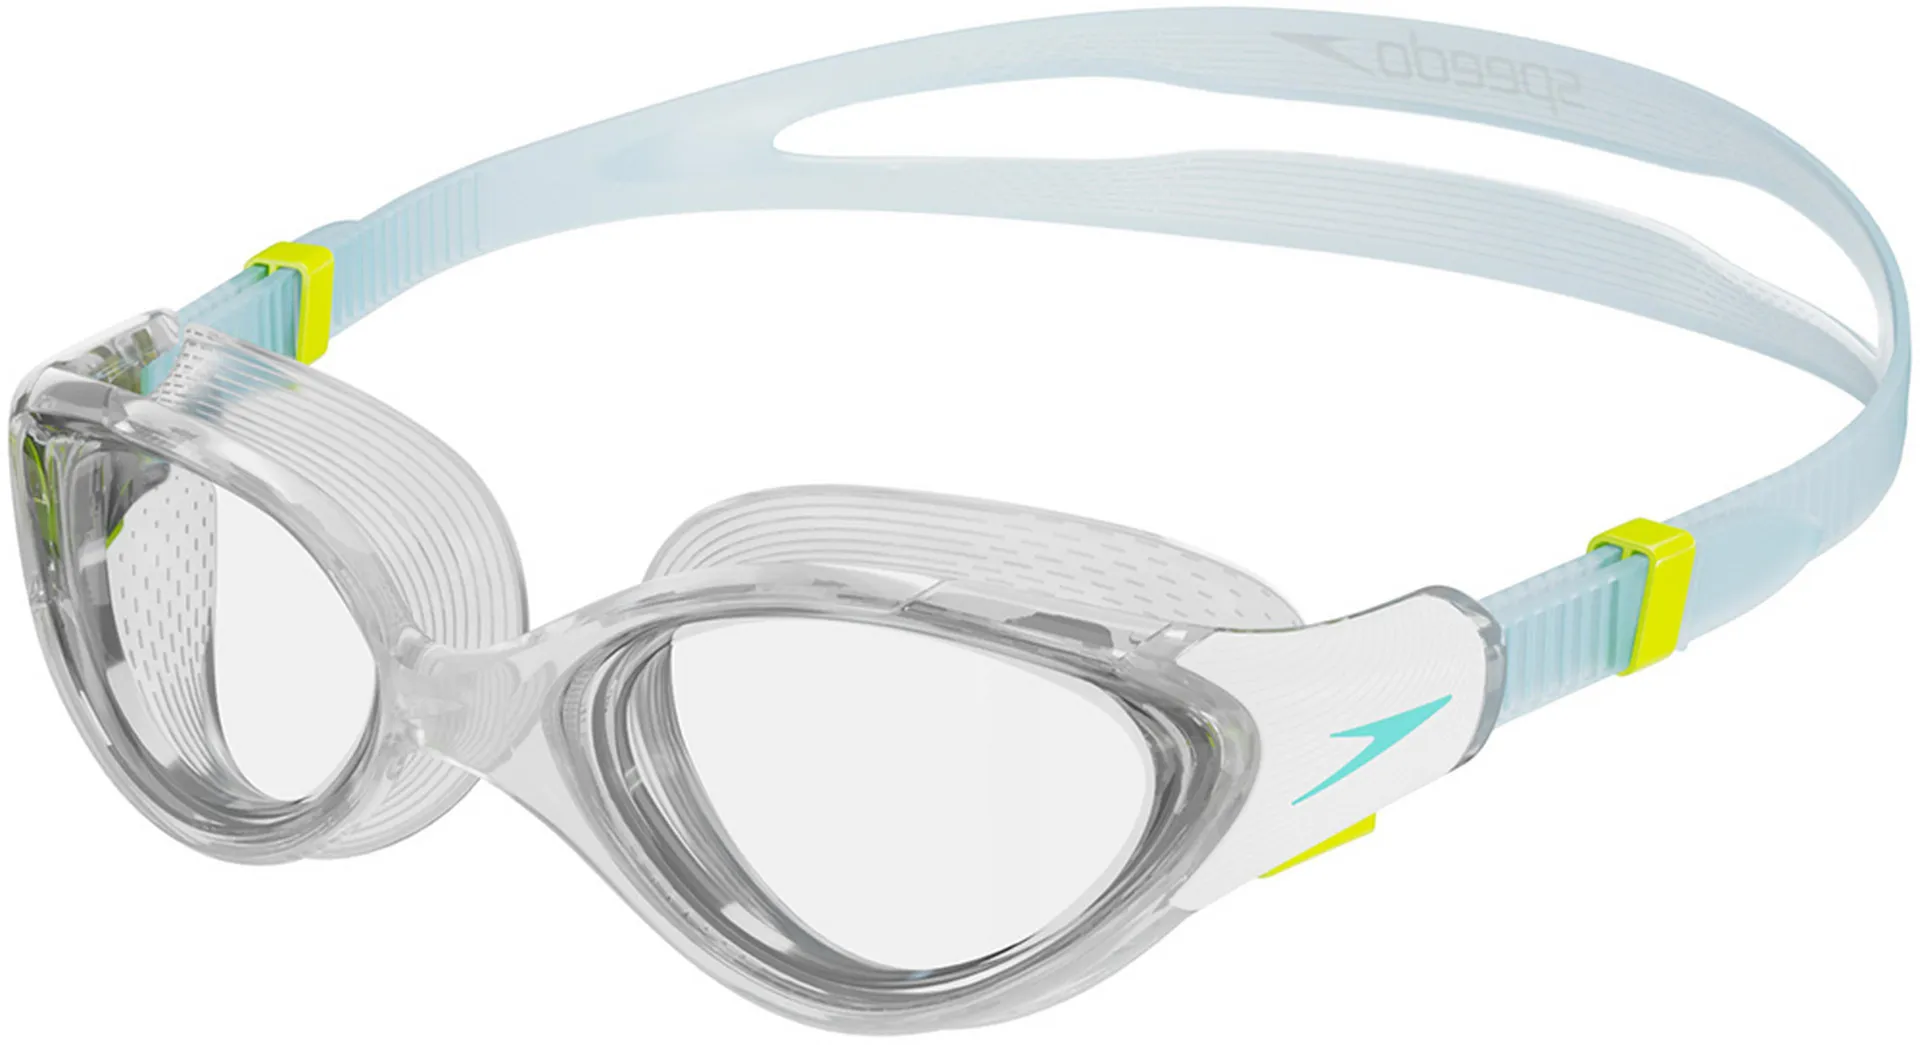 Speedo Women's Futura Biofuse Flexiseal Goggles